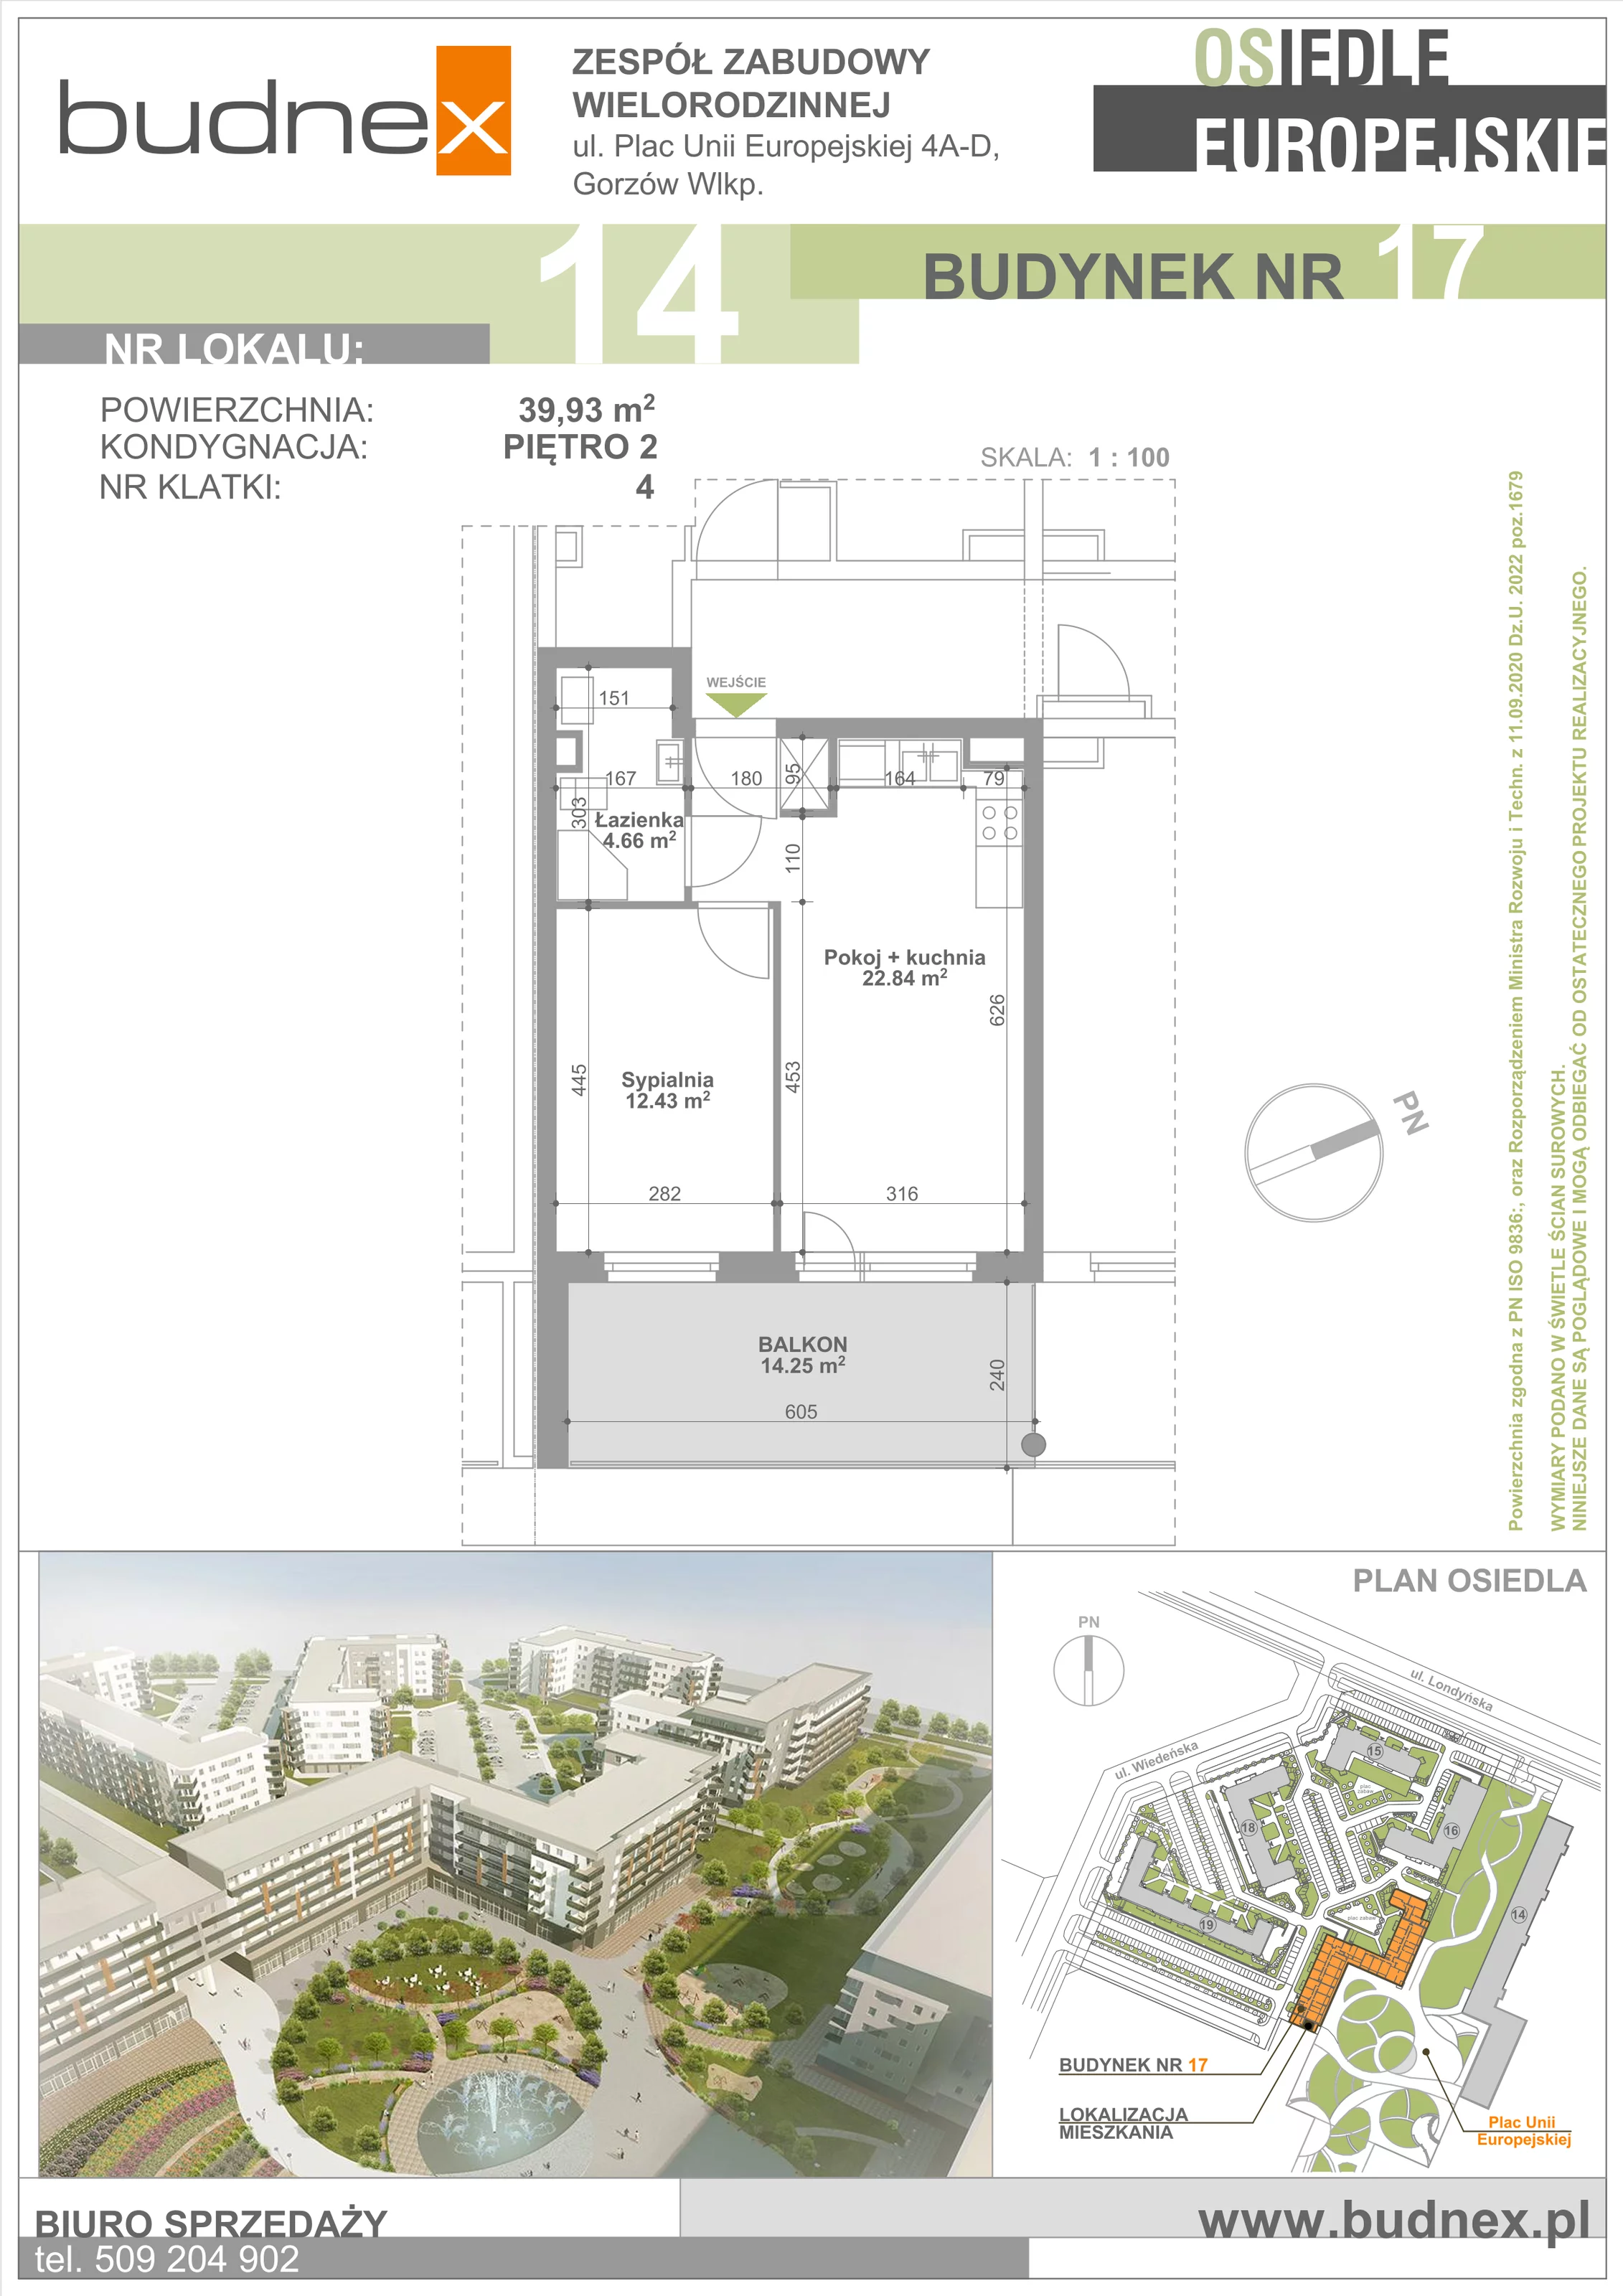 Mieszkanie 39,93 m², piętro 2, oferta nr 4/M14, Osiedle Europejskie - Budynek 17, Gorzów Wielkopolski, Plac Unii Europejskiej 4A-D